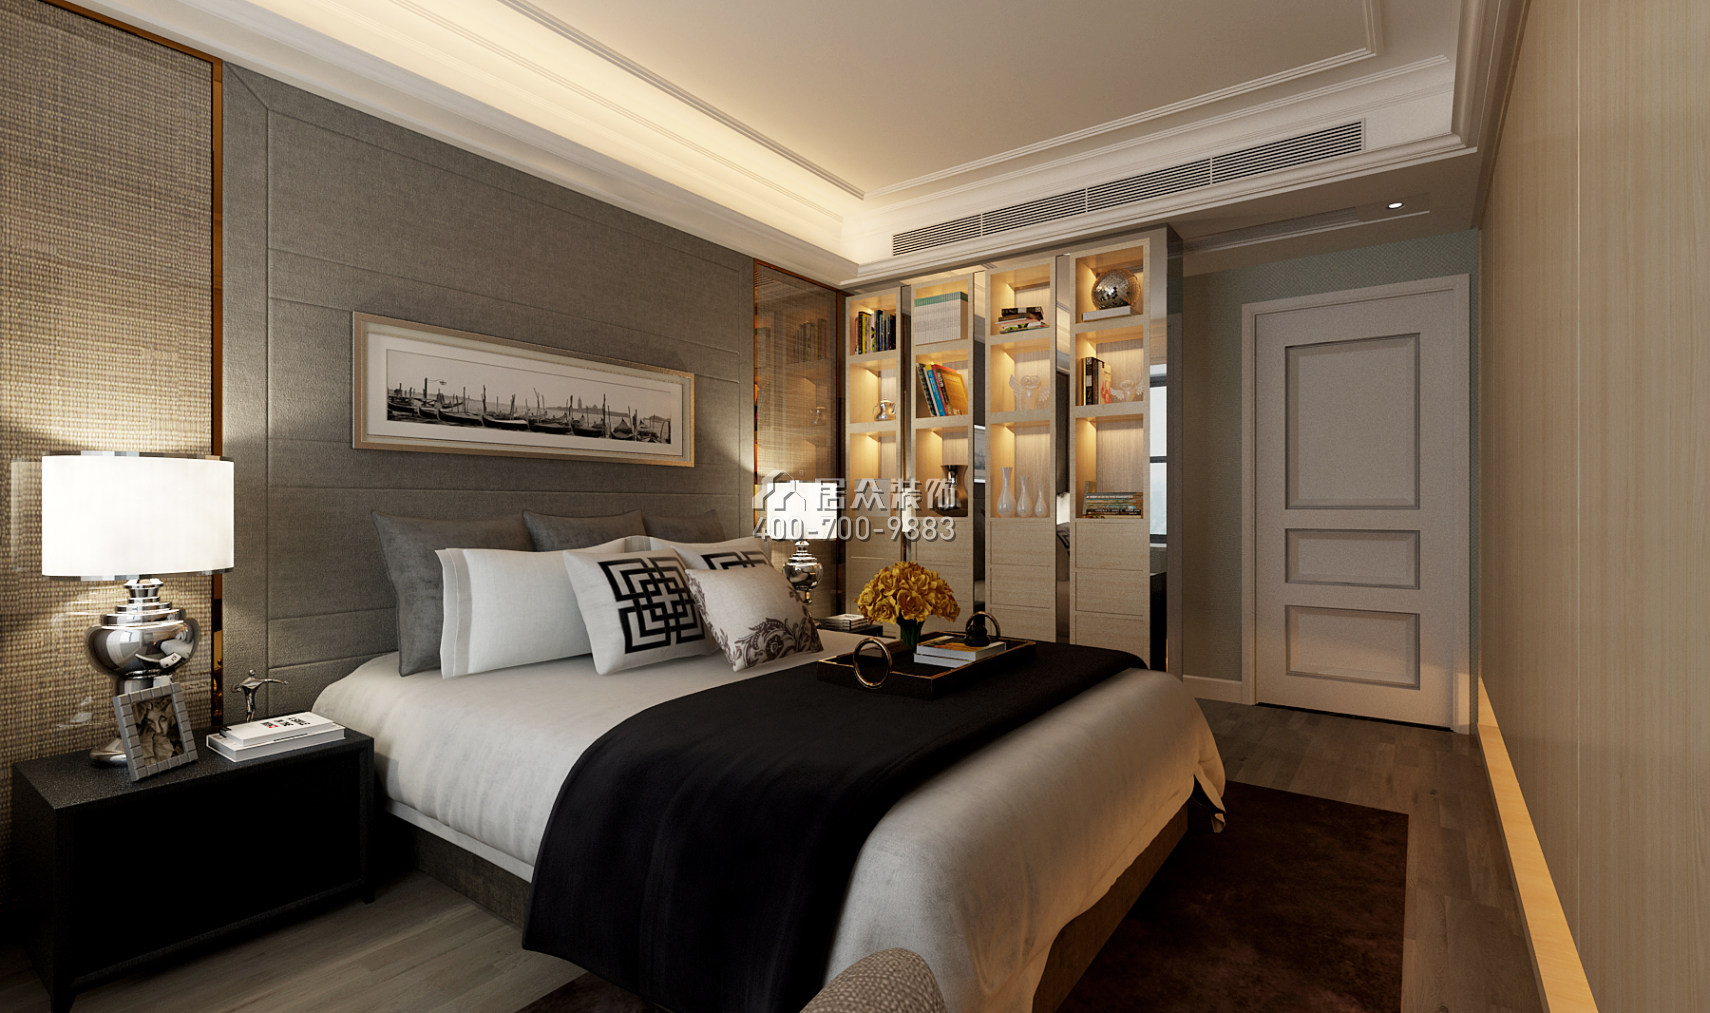 常德万达广场140平方米现代简约风格平层户型卧室装修效果图